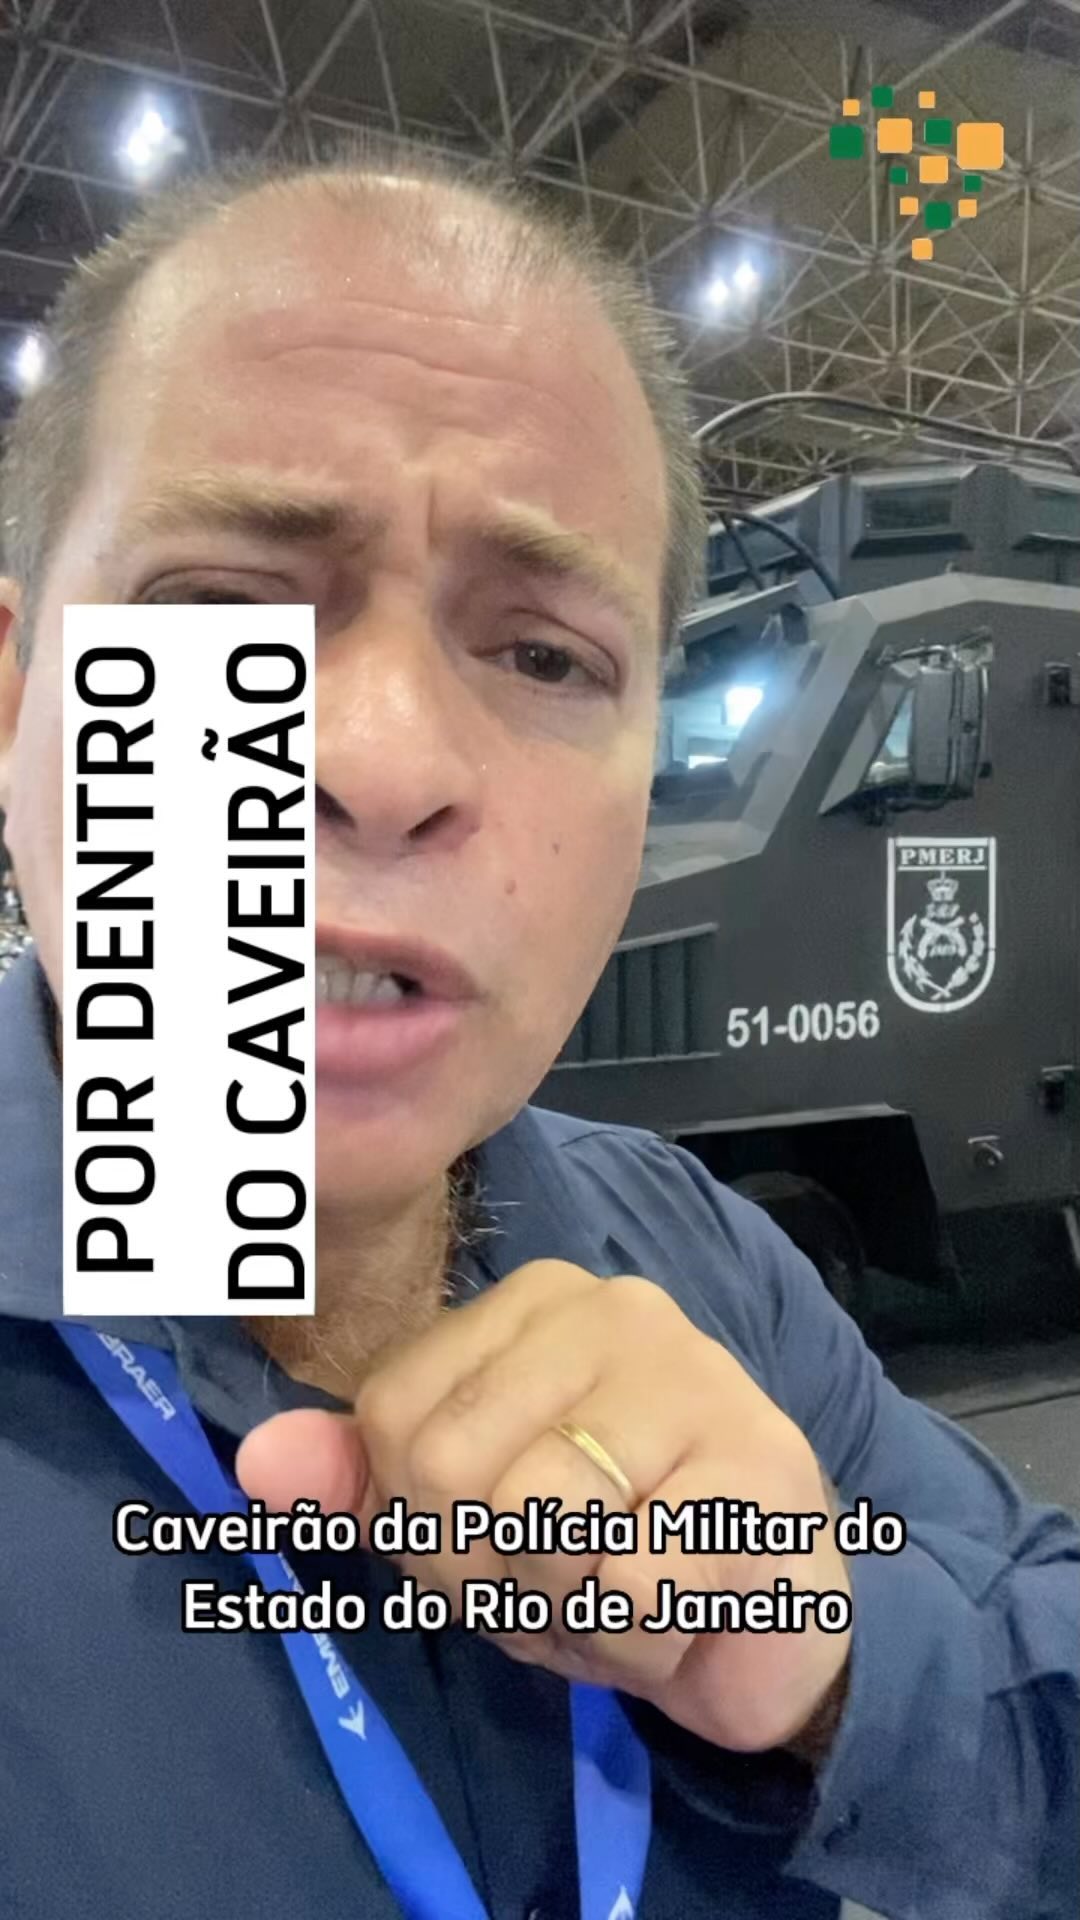 Por dentro do CAVEIRÃO da Polícia Militar do Rio de Janeiro

Você conhece o famo...